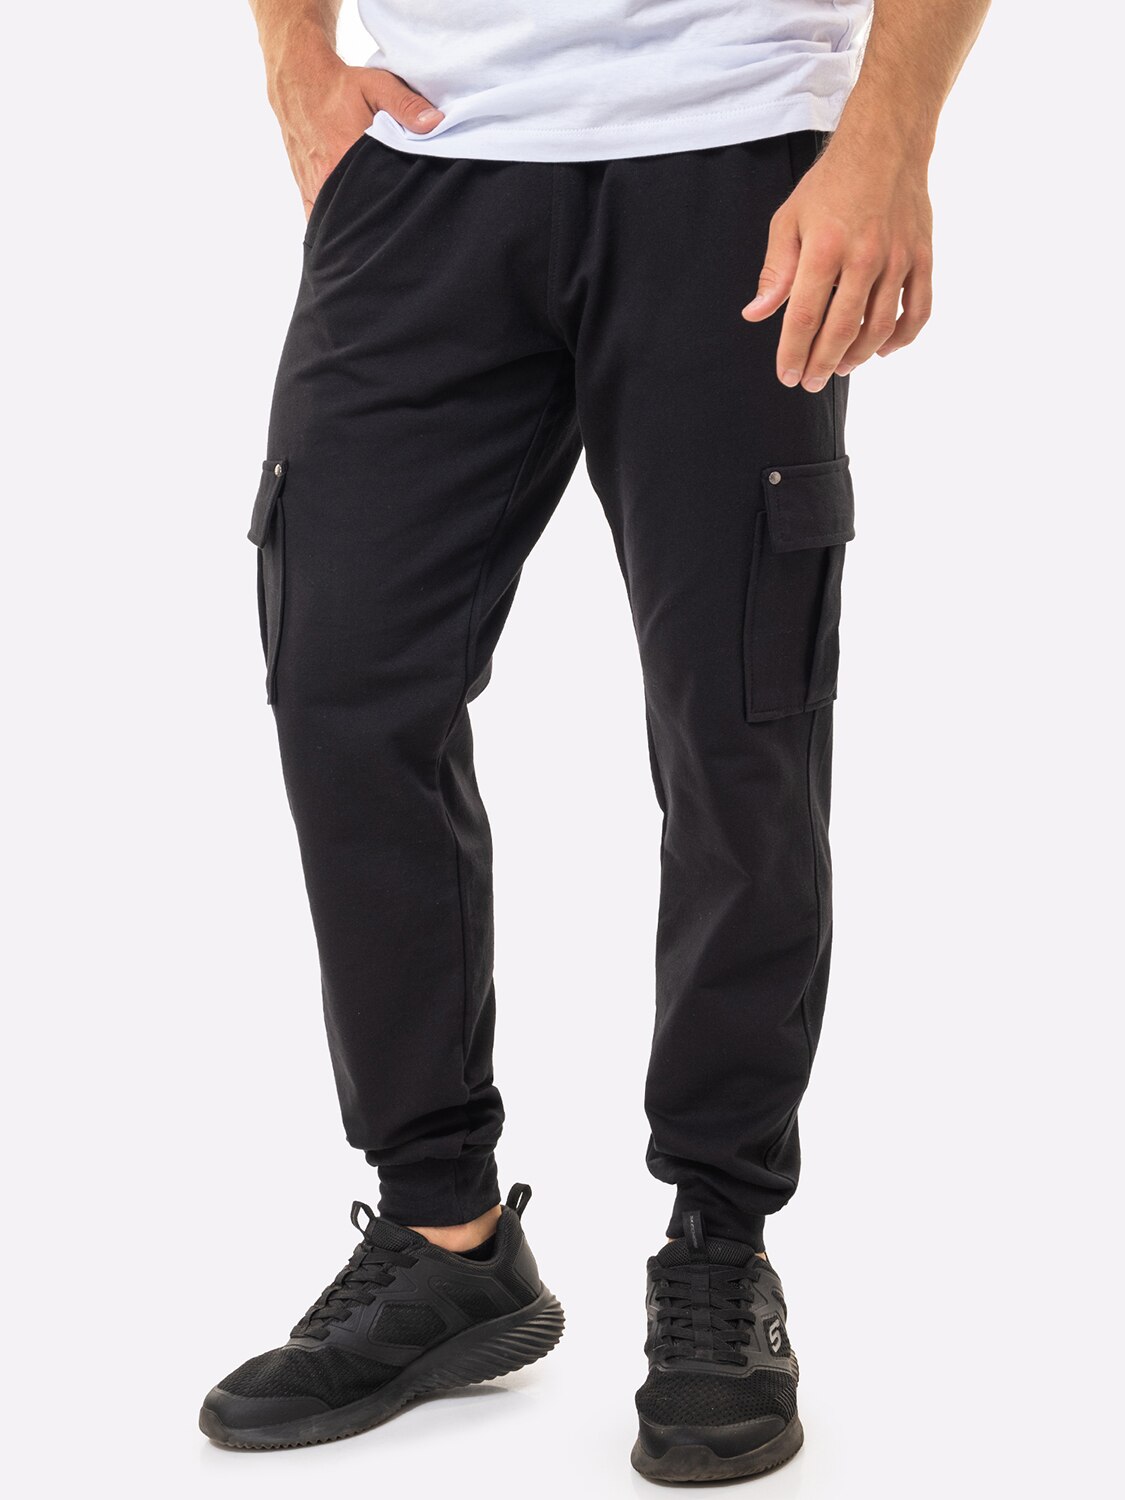 Спортивные брюки мужские HappyFox 9117 черные 50 RU